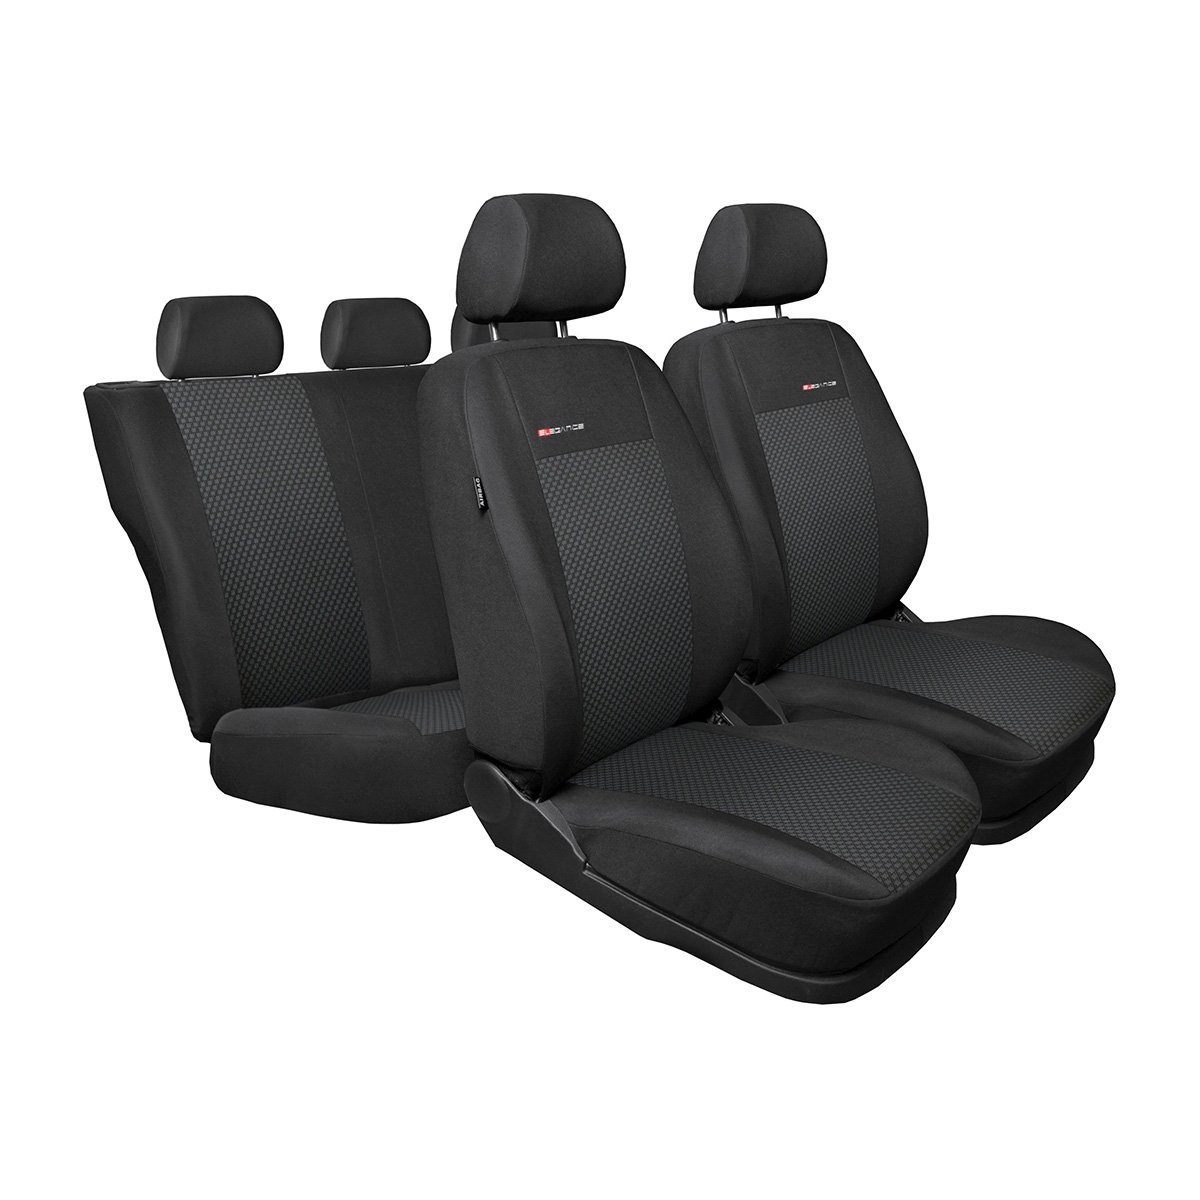 Mossa - Maßgeschneiderte Sitzbezüge Auto kompatibel mit Skoda Octavia III Kombi, Liftback (2013-2019) - Bezug für die hintere Armlehne - Autositzbezüge Schonbezüge für Autositze - E3 von Mossa